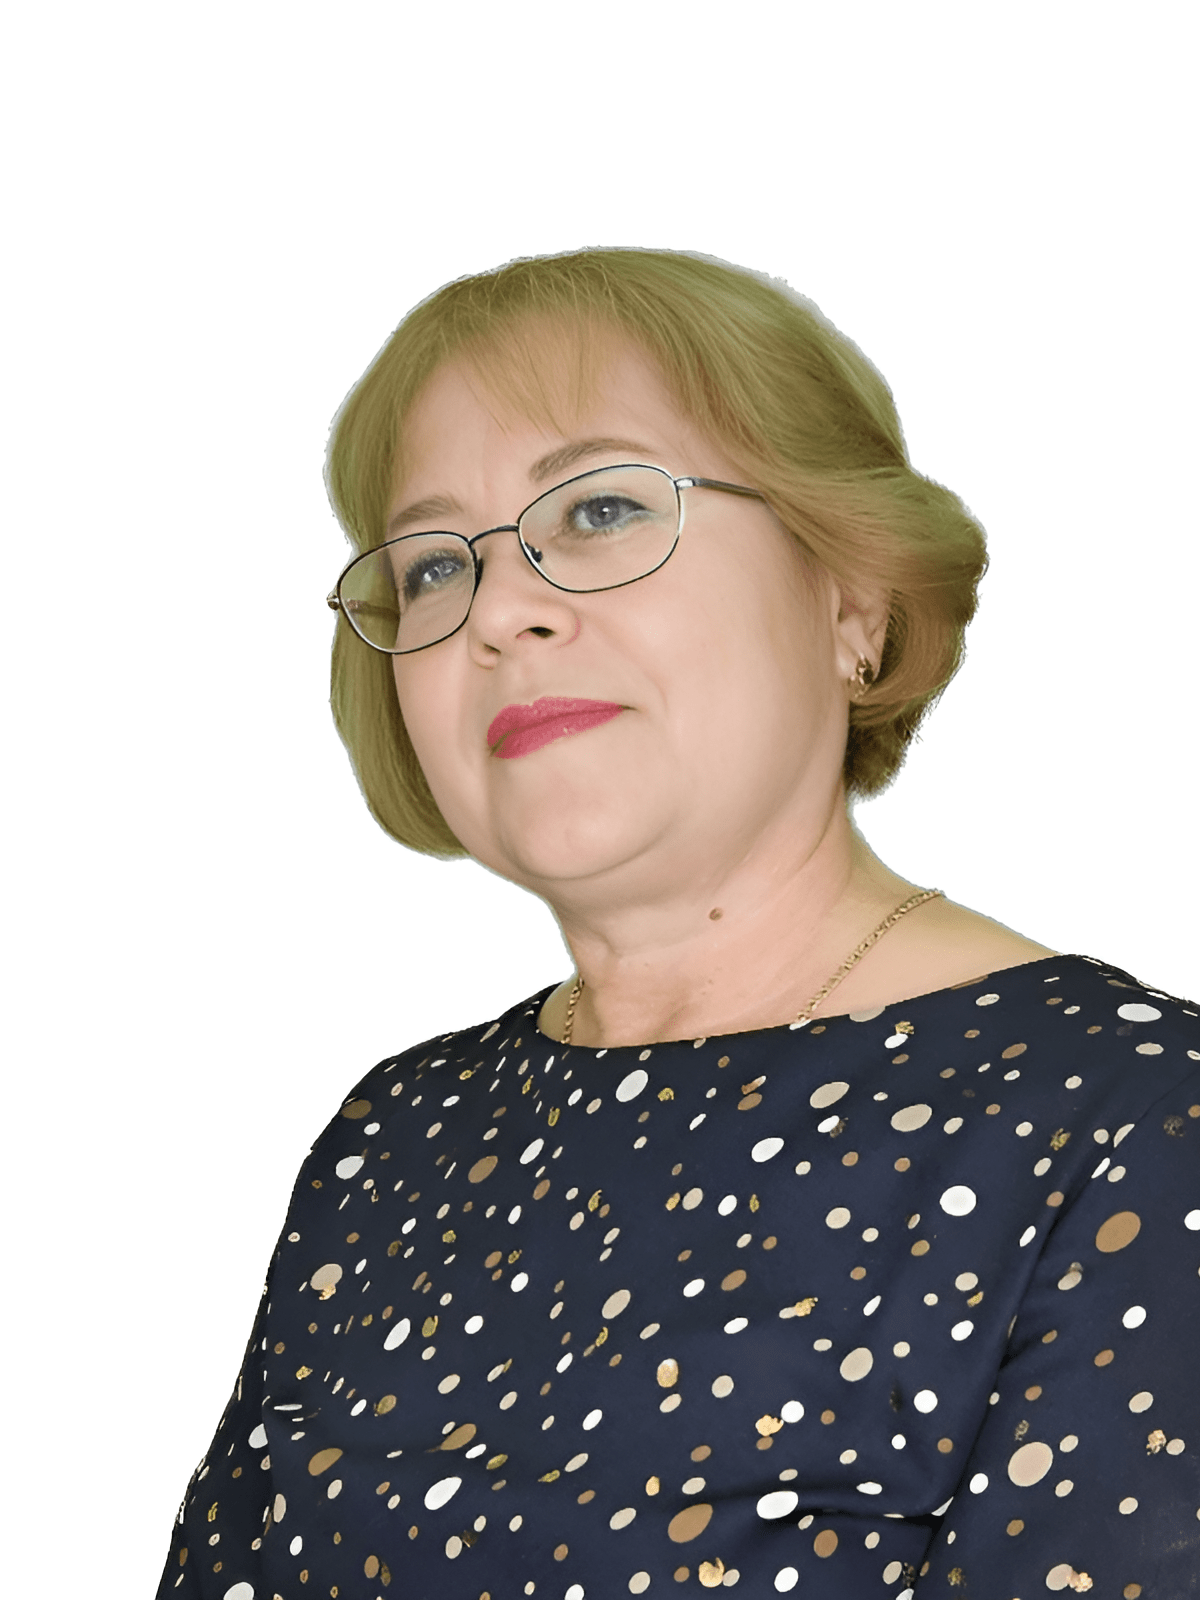 Шестакова Ольга Валерьевна.